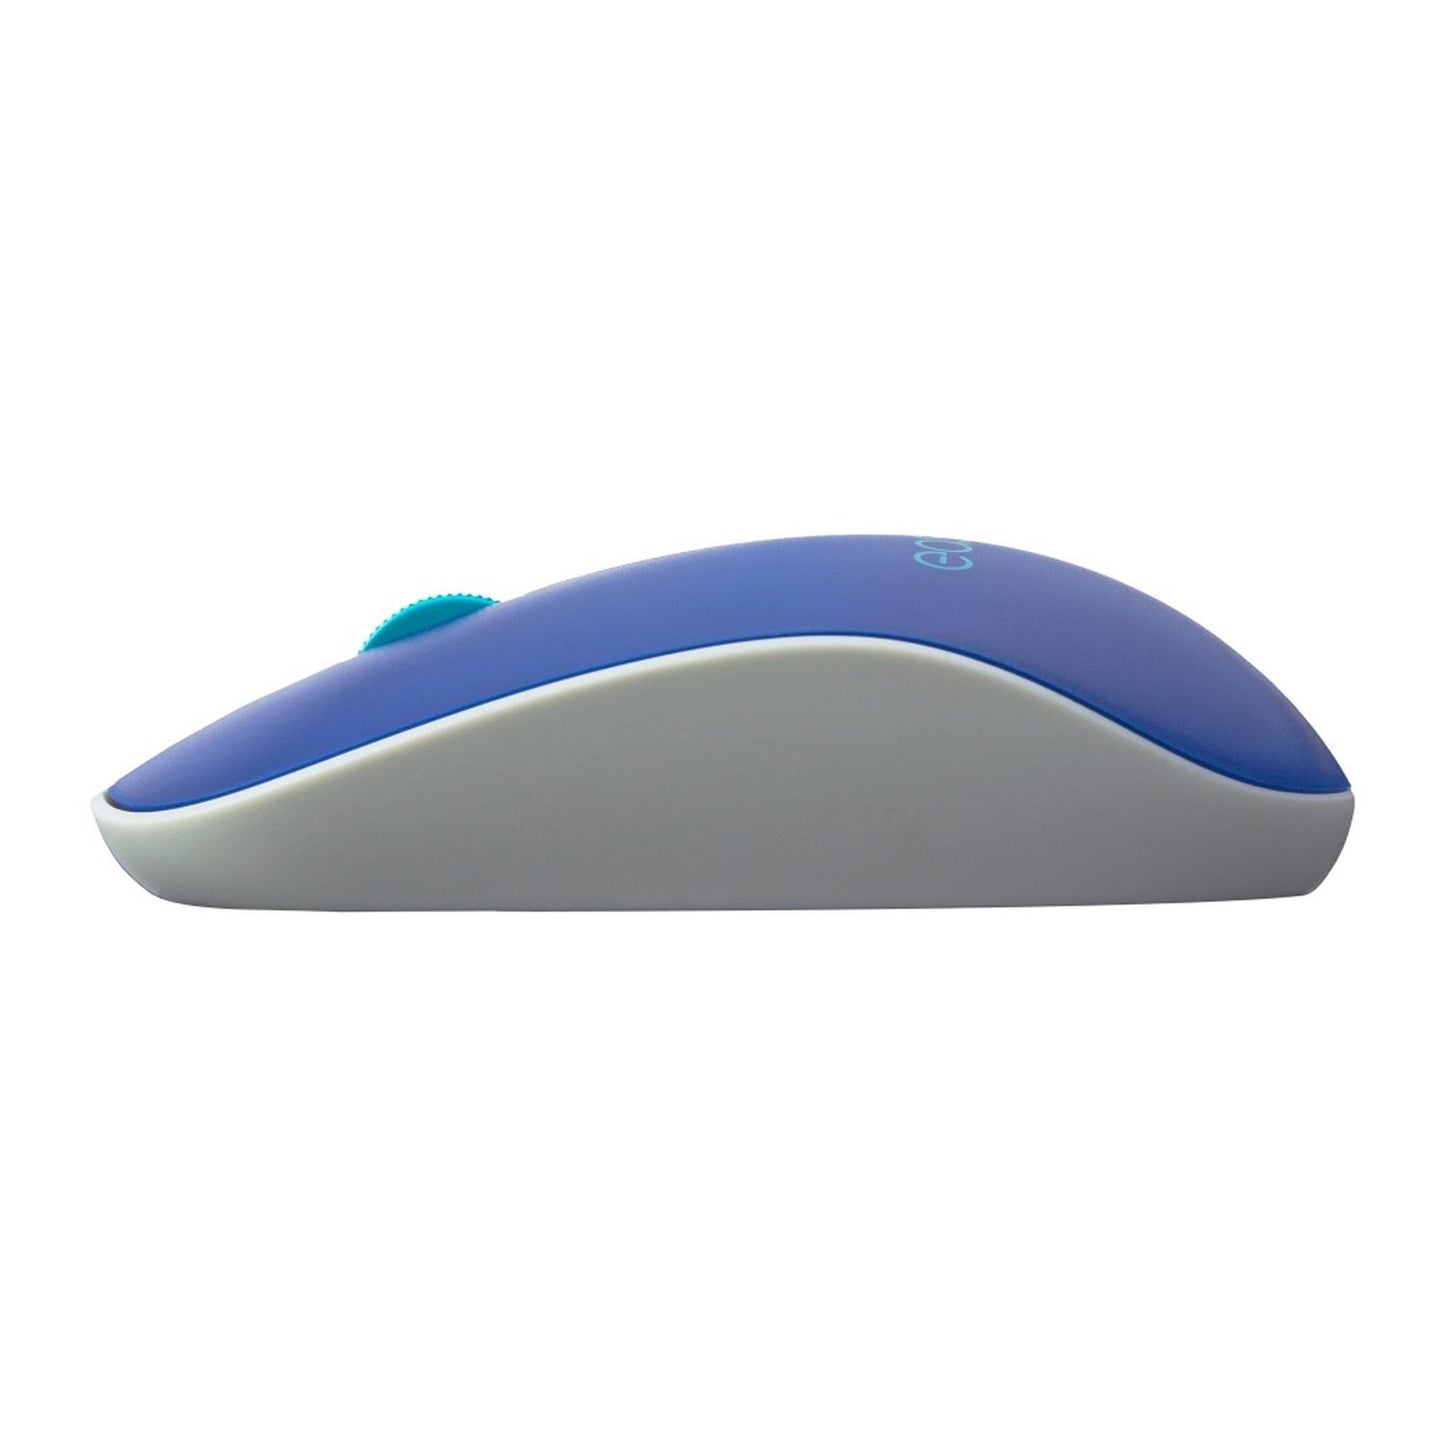 Mouse inalámbrico Viva Azul 1000 dpi/EL-995128